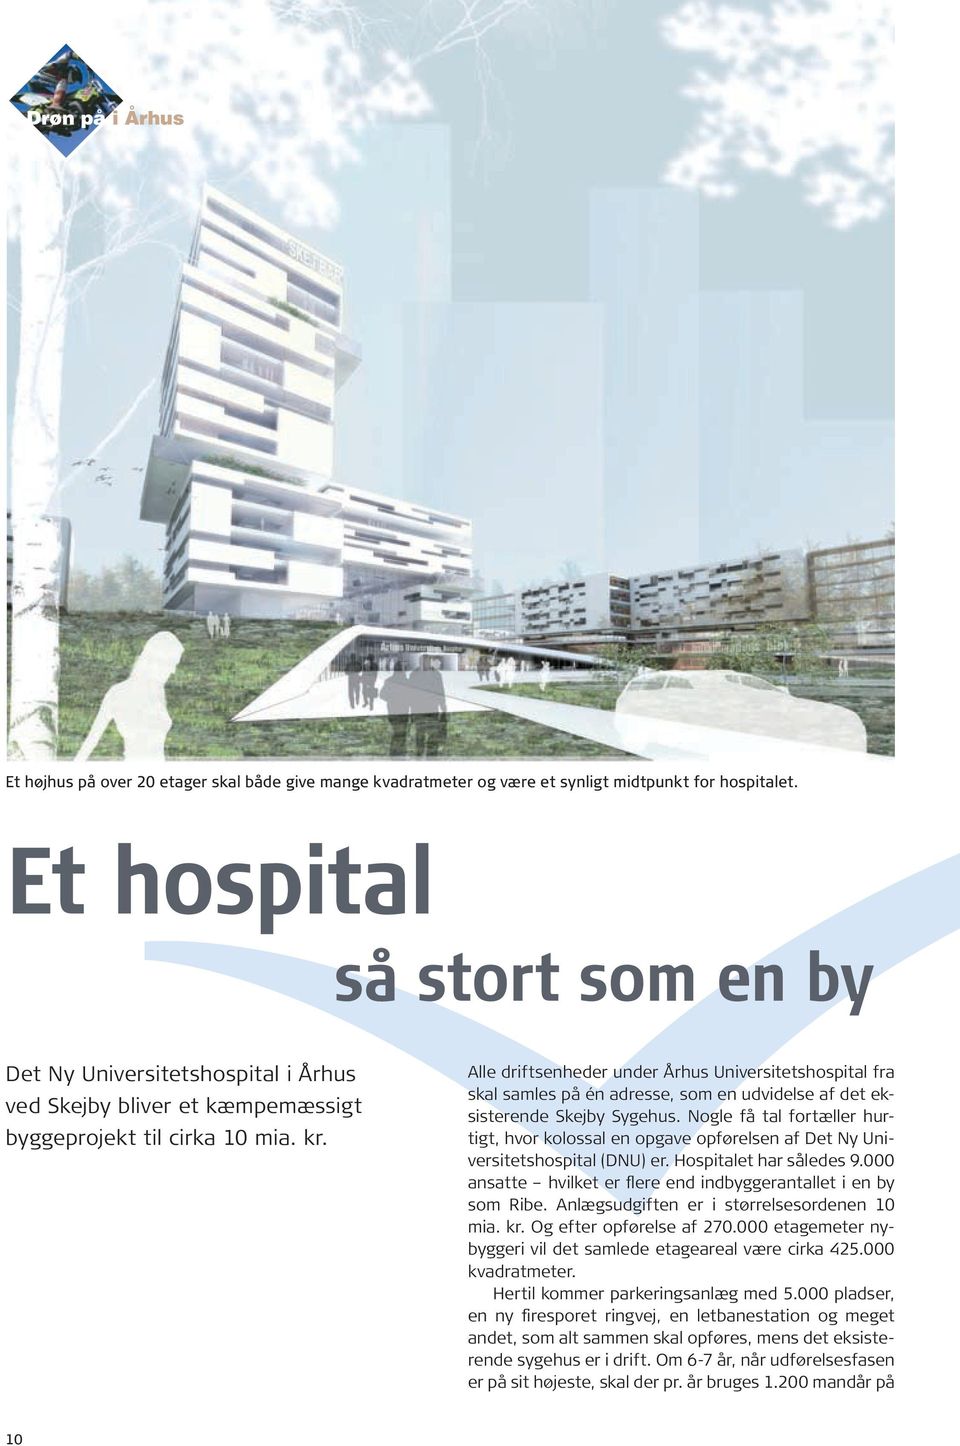 Alle driftsenheder under Århus Universitetshospital fra skal samles på én adresse, som en udvidelse af det eksisterende Skejby Sygehus.